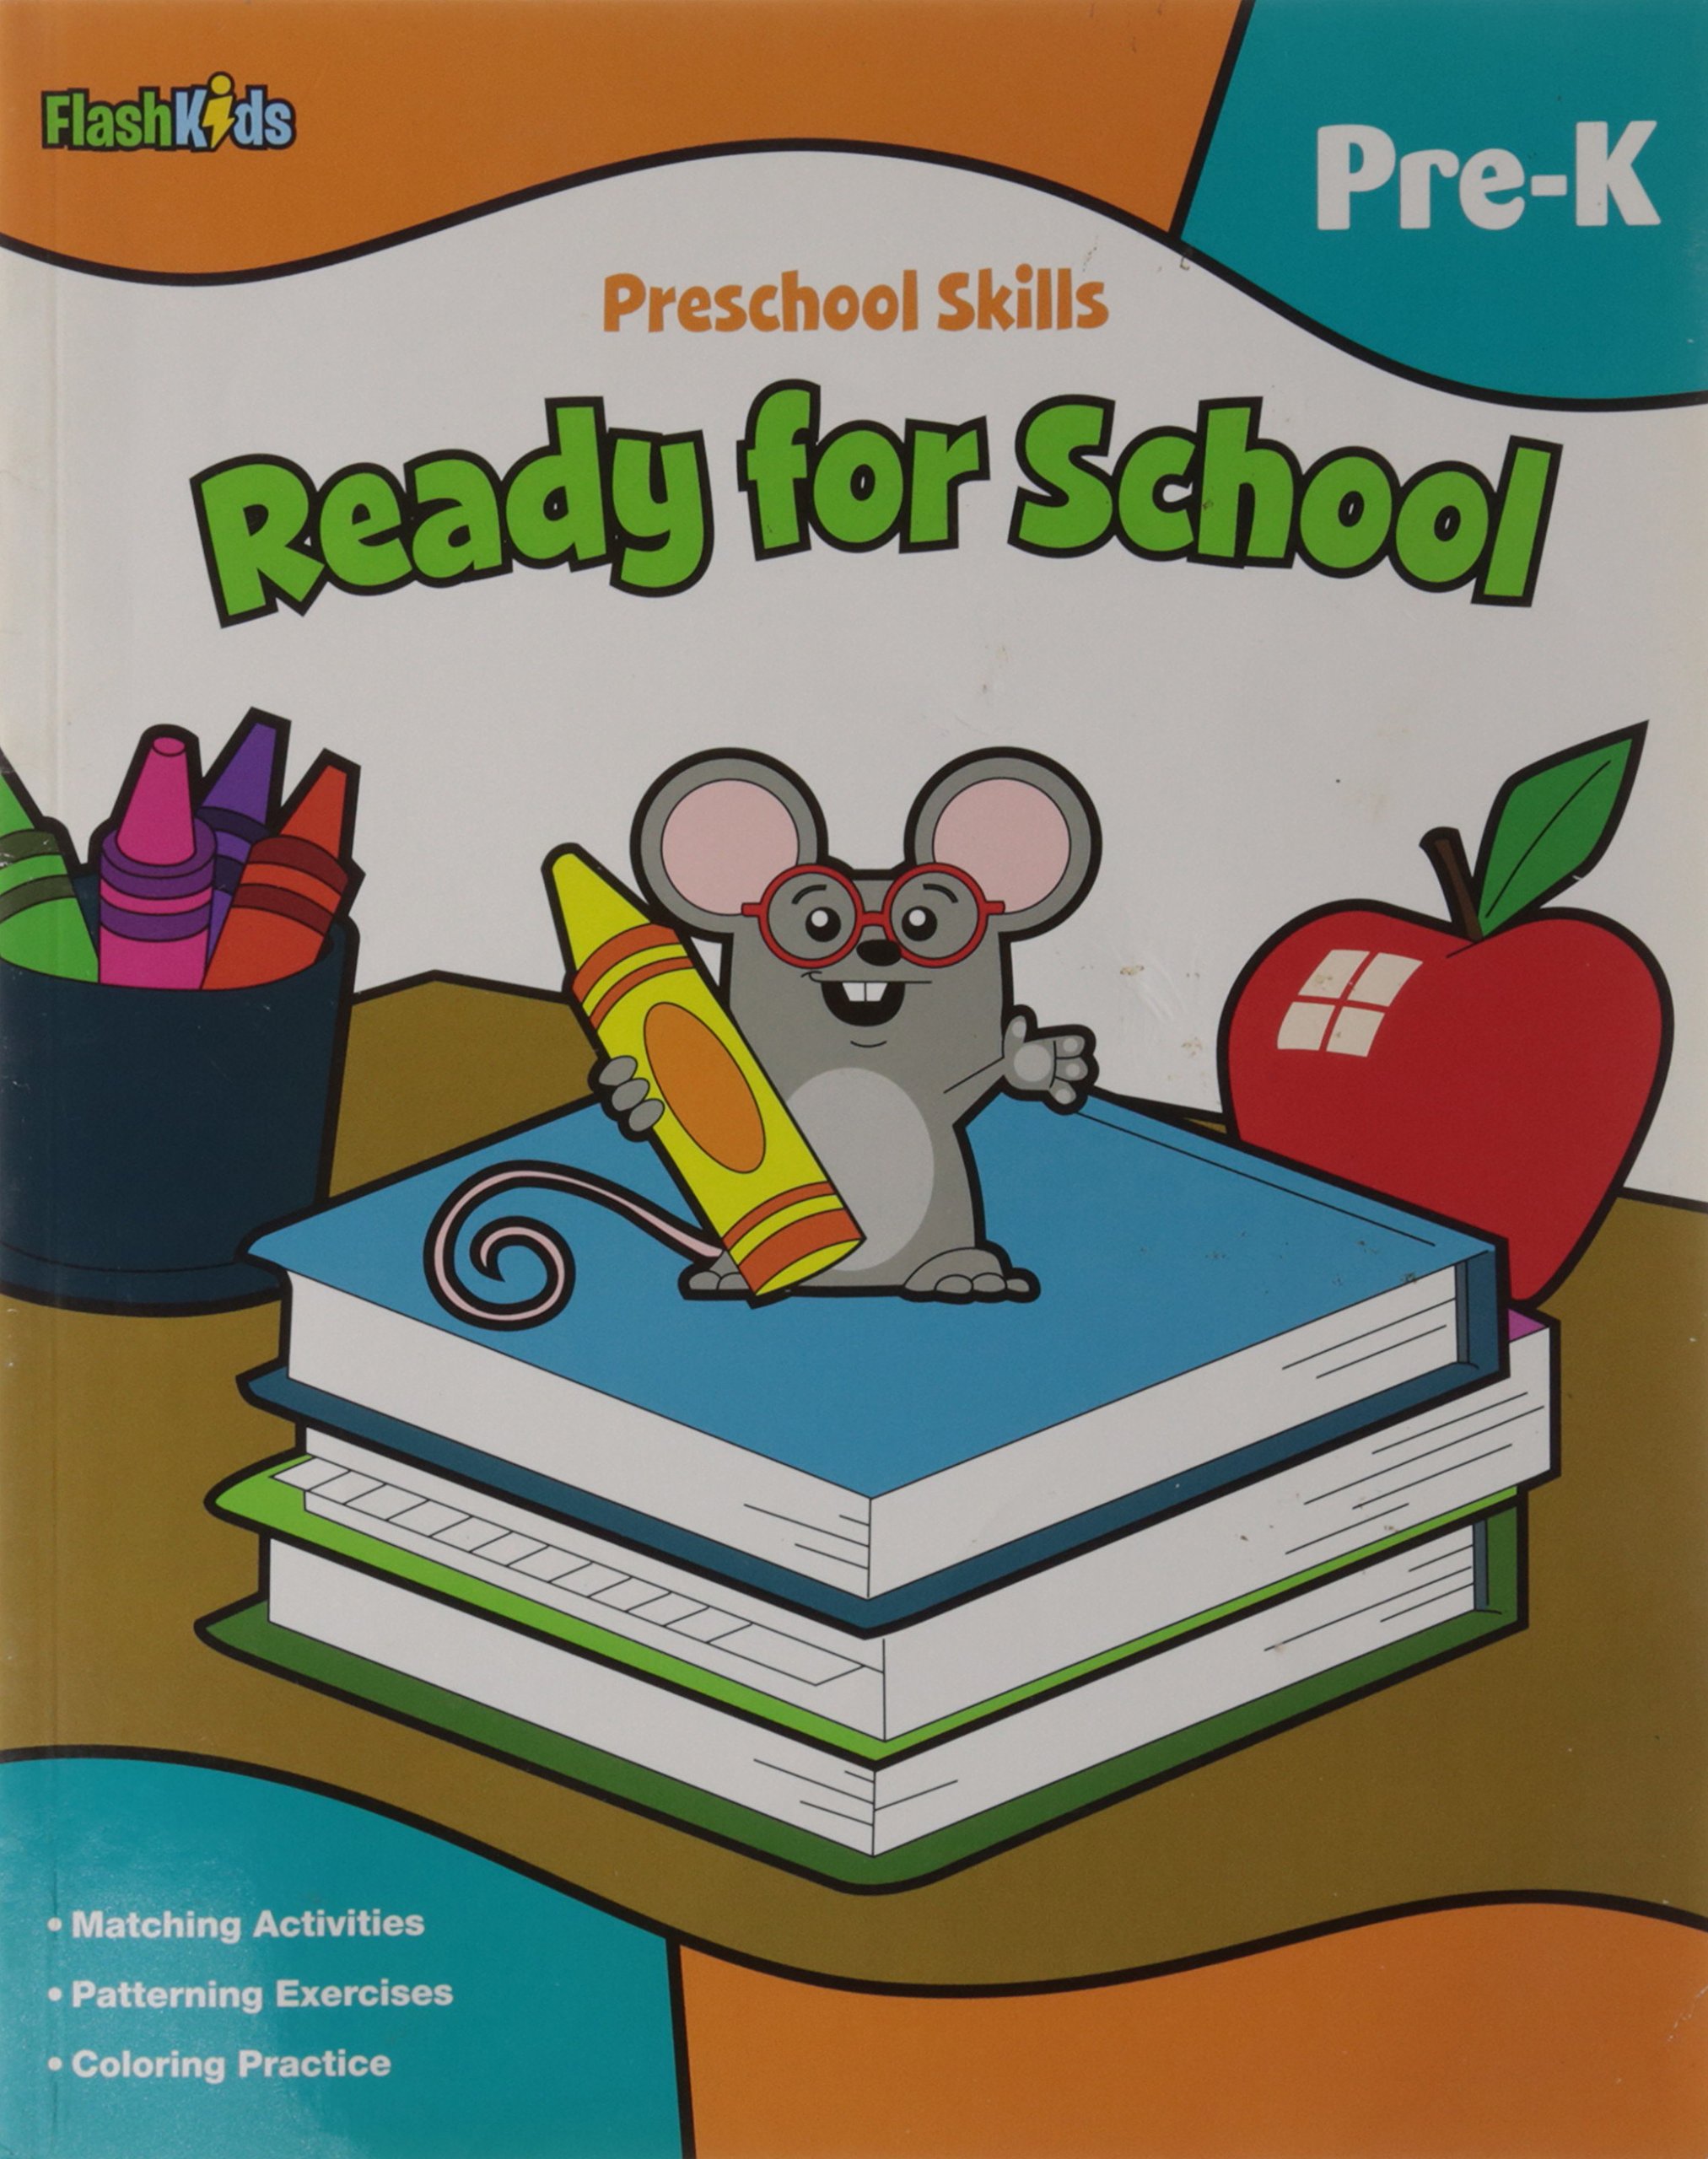 Preschool Skills: Ready for School